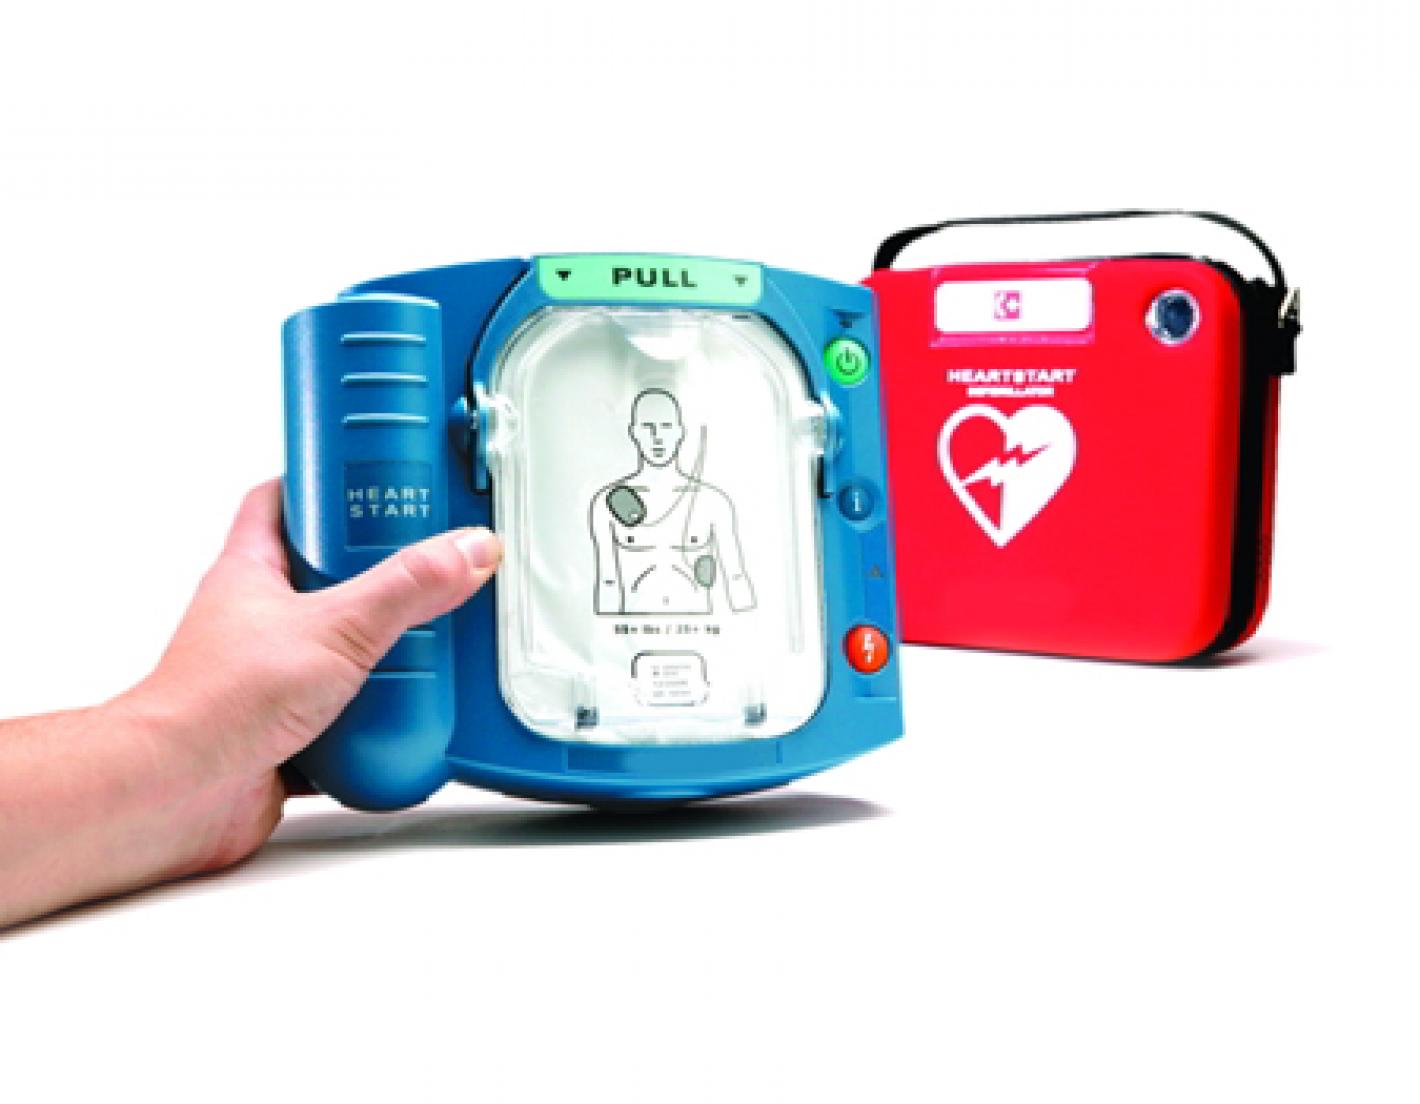 images/img/federazione/medium/defibrillatore_pp.jpg